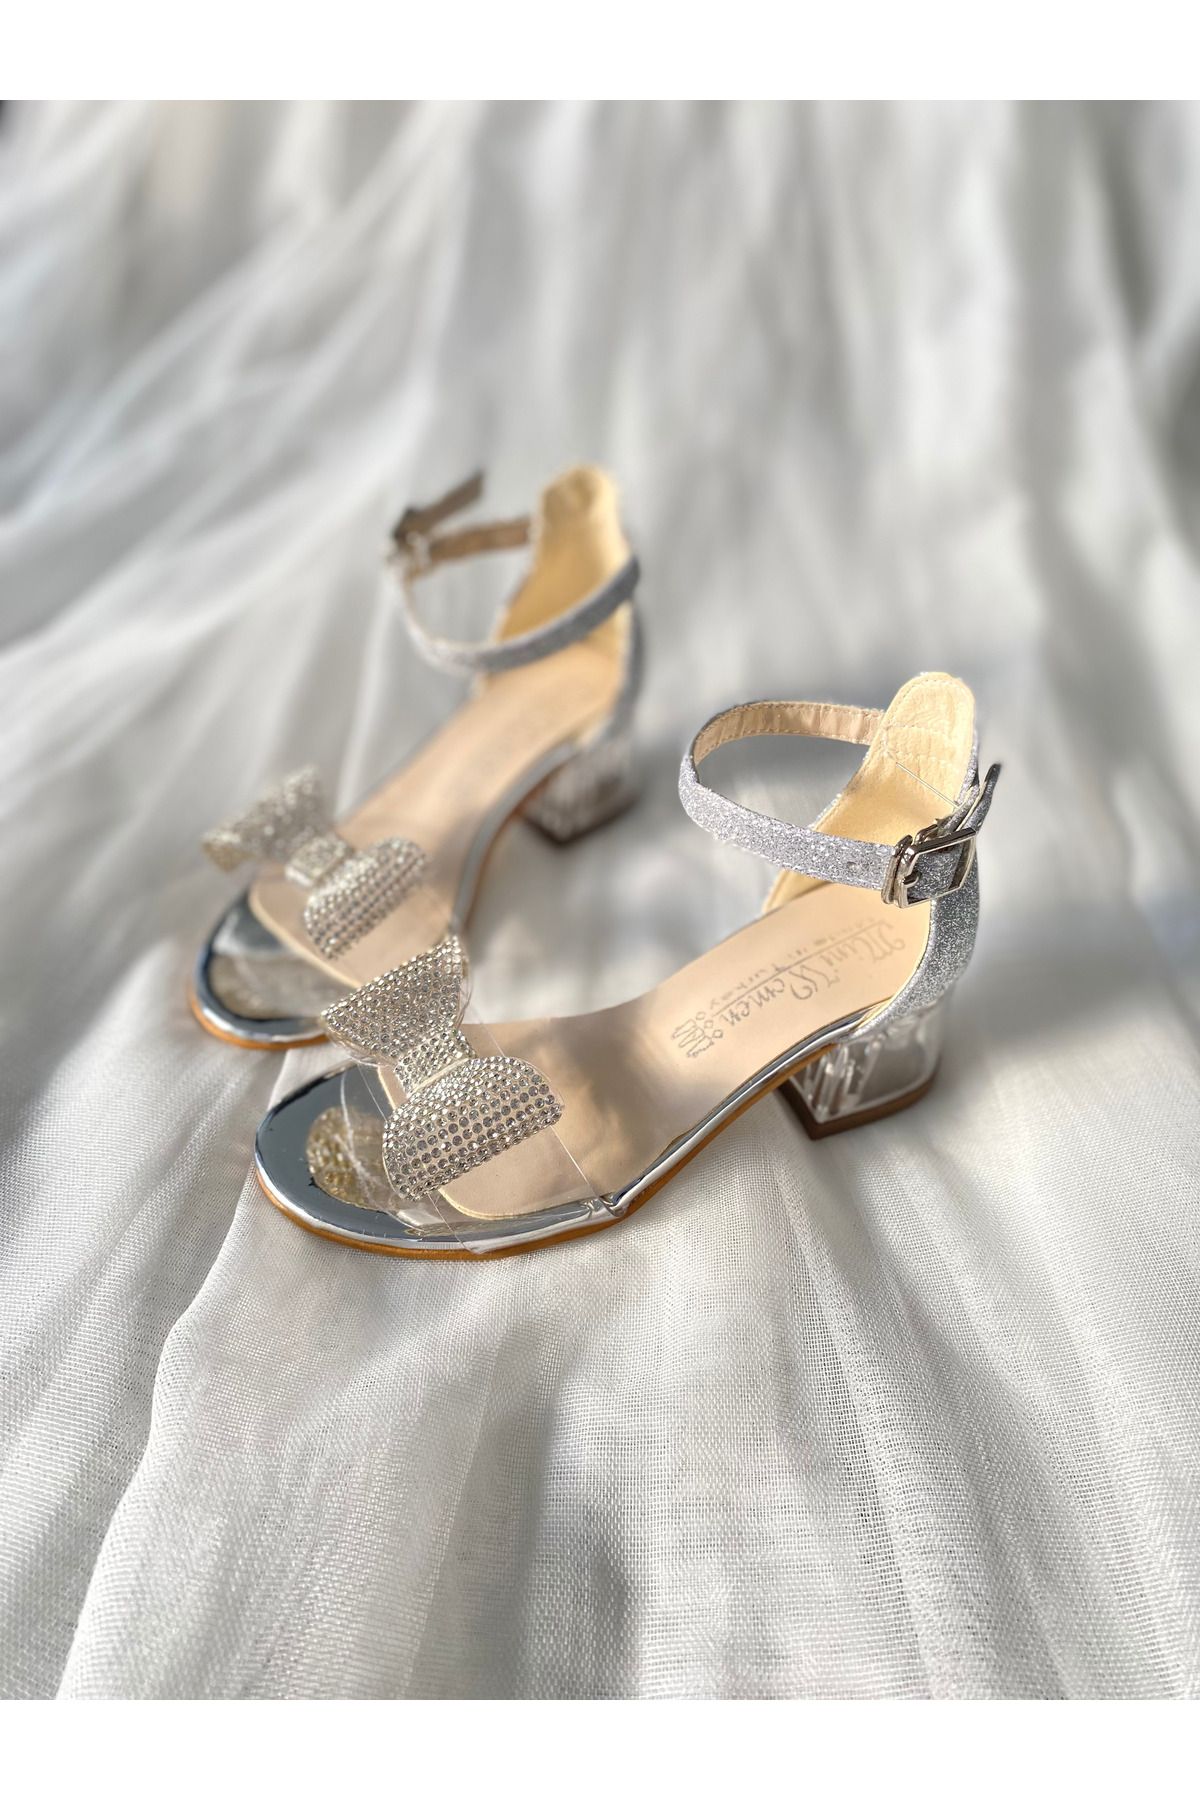 NS Little Kız Çocuk Gümüş Şeffaf Taş Detaylı Topuklu Ayakkabı, Kız Çocuk Abiye Ayakkabı